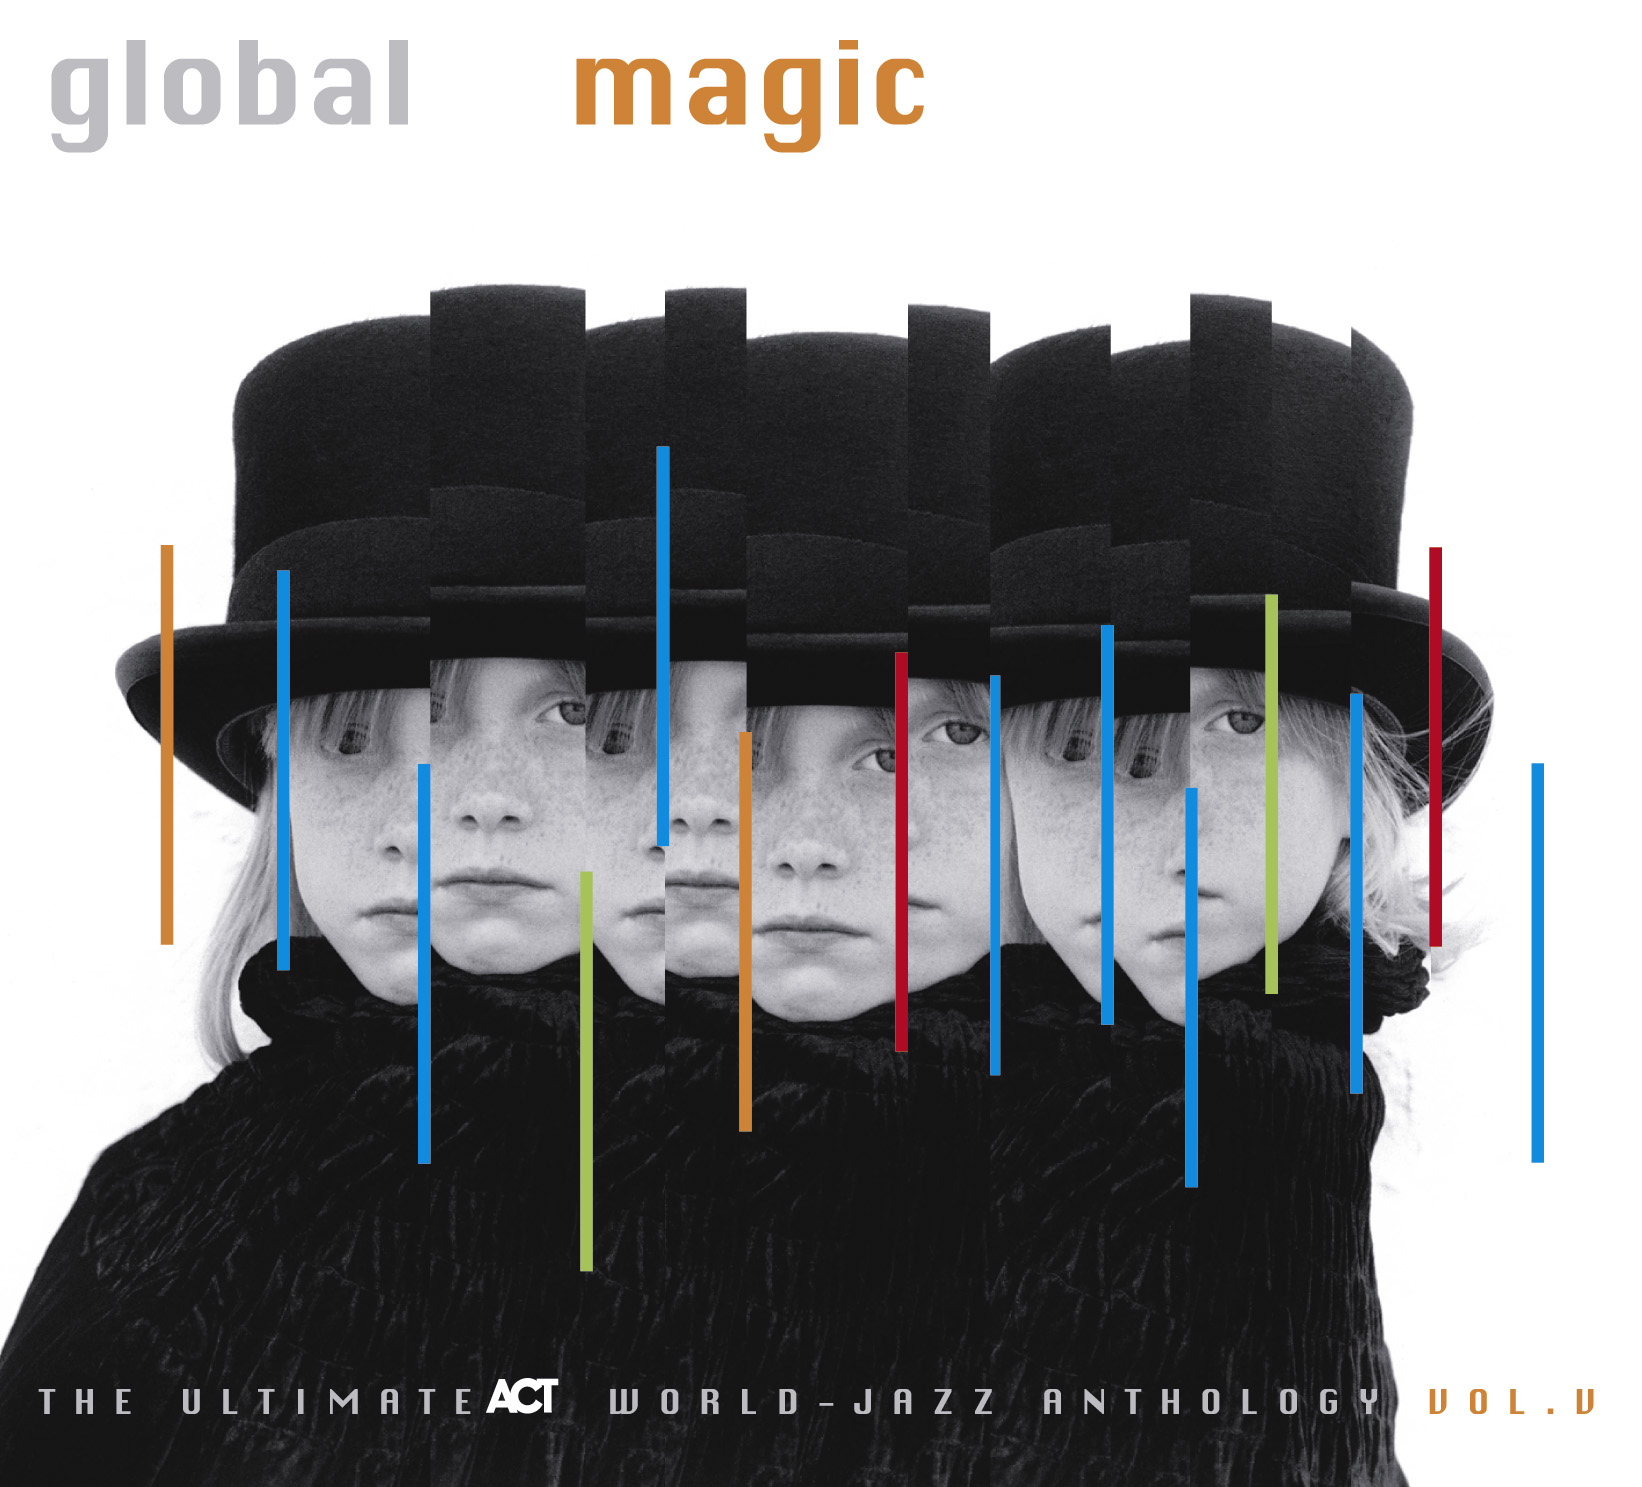 Global Magic - The Ultimate Act World Jazz Anthology Vol. V